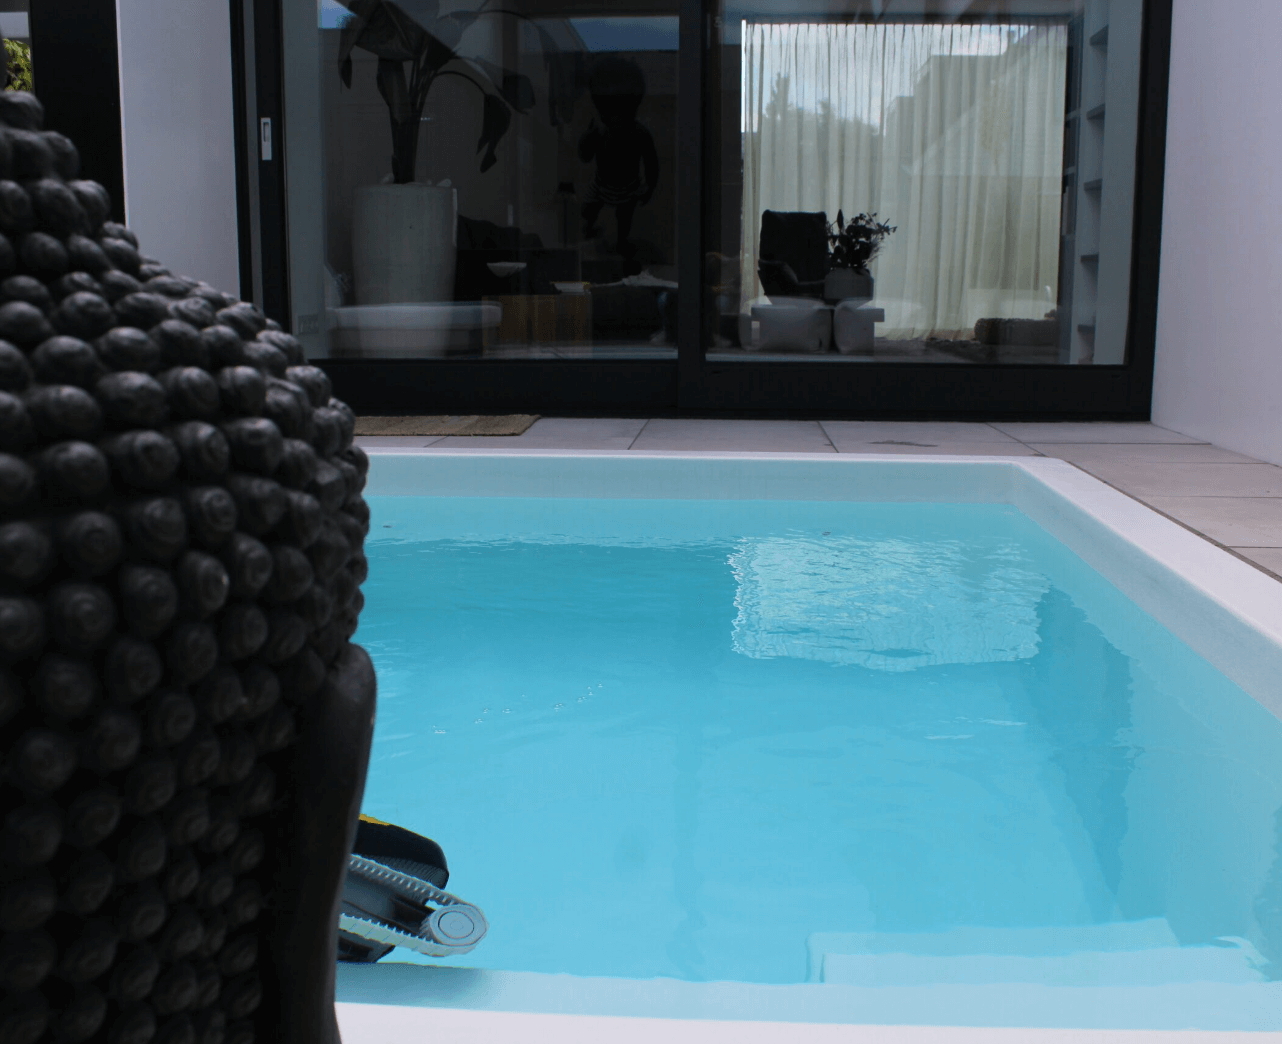 Plunge pool met zwembadrobot